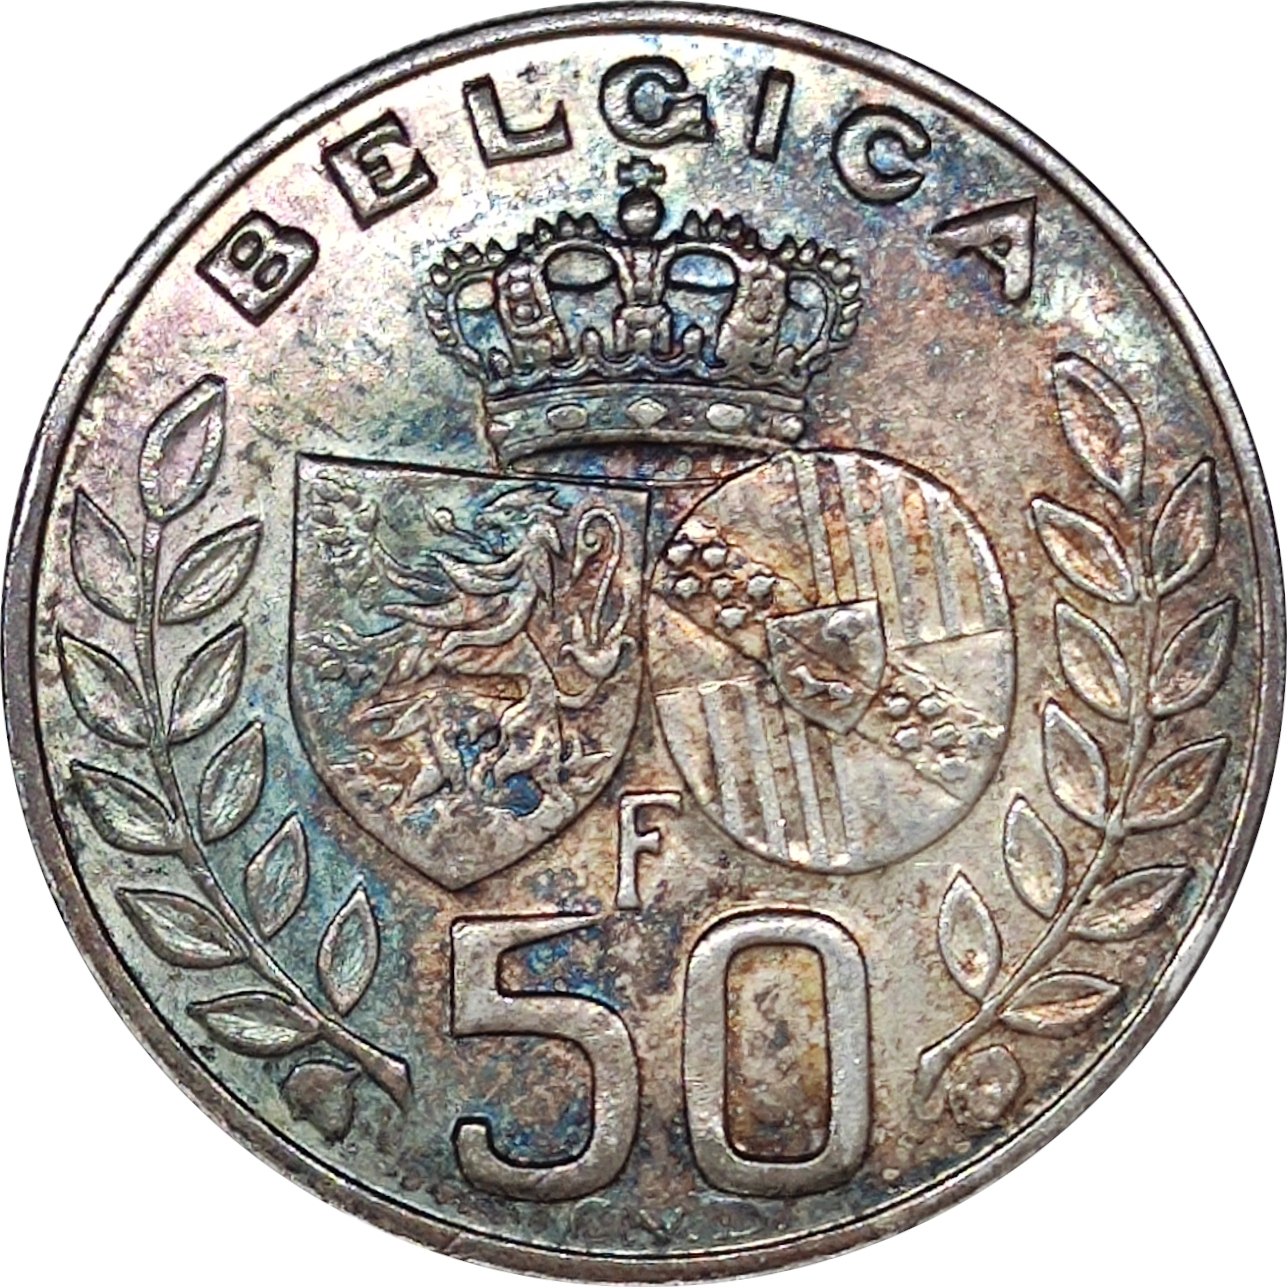 50 francs - Mariage royal